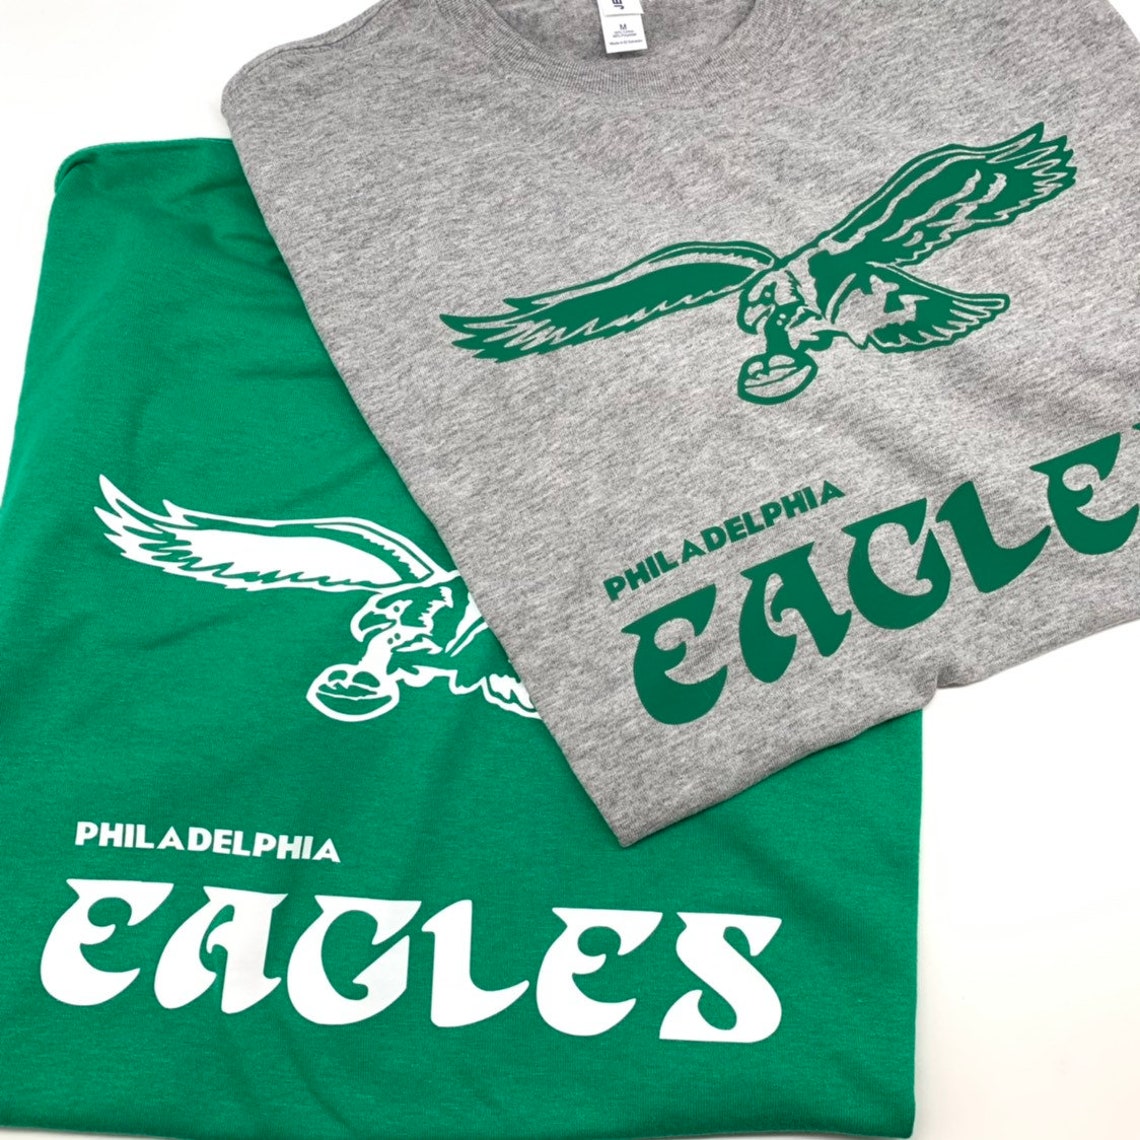 Eagles Retro T-shirt | Etsy